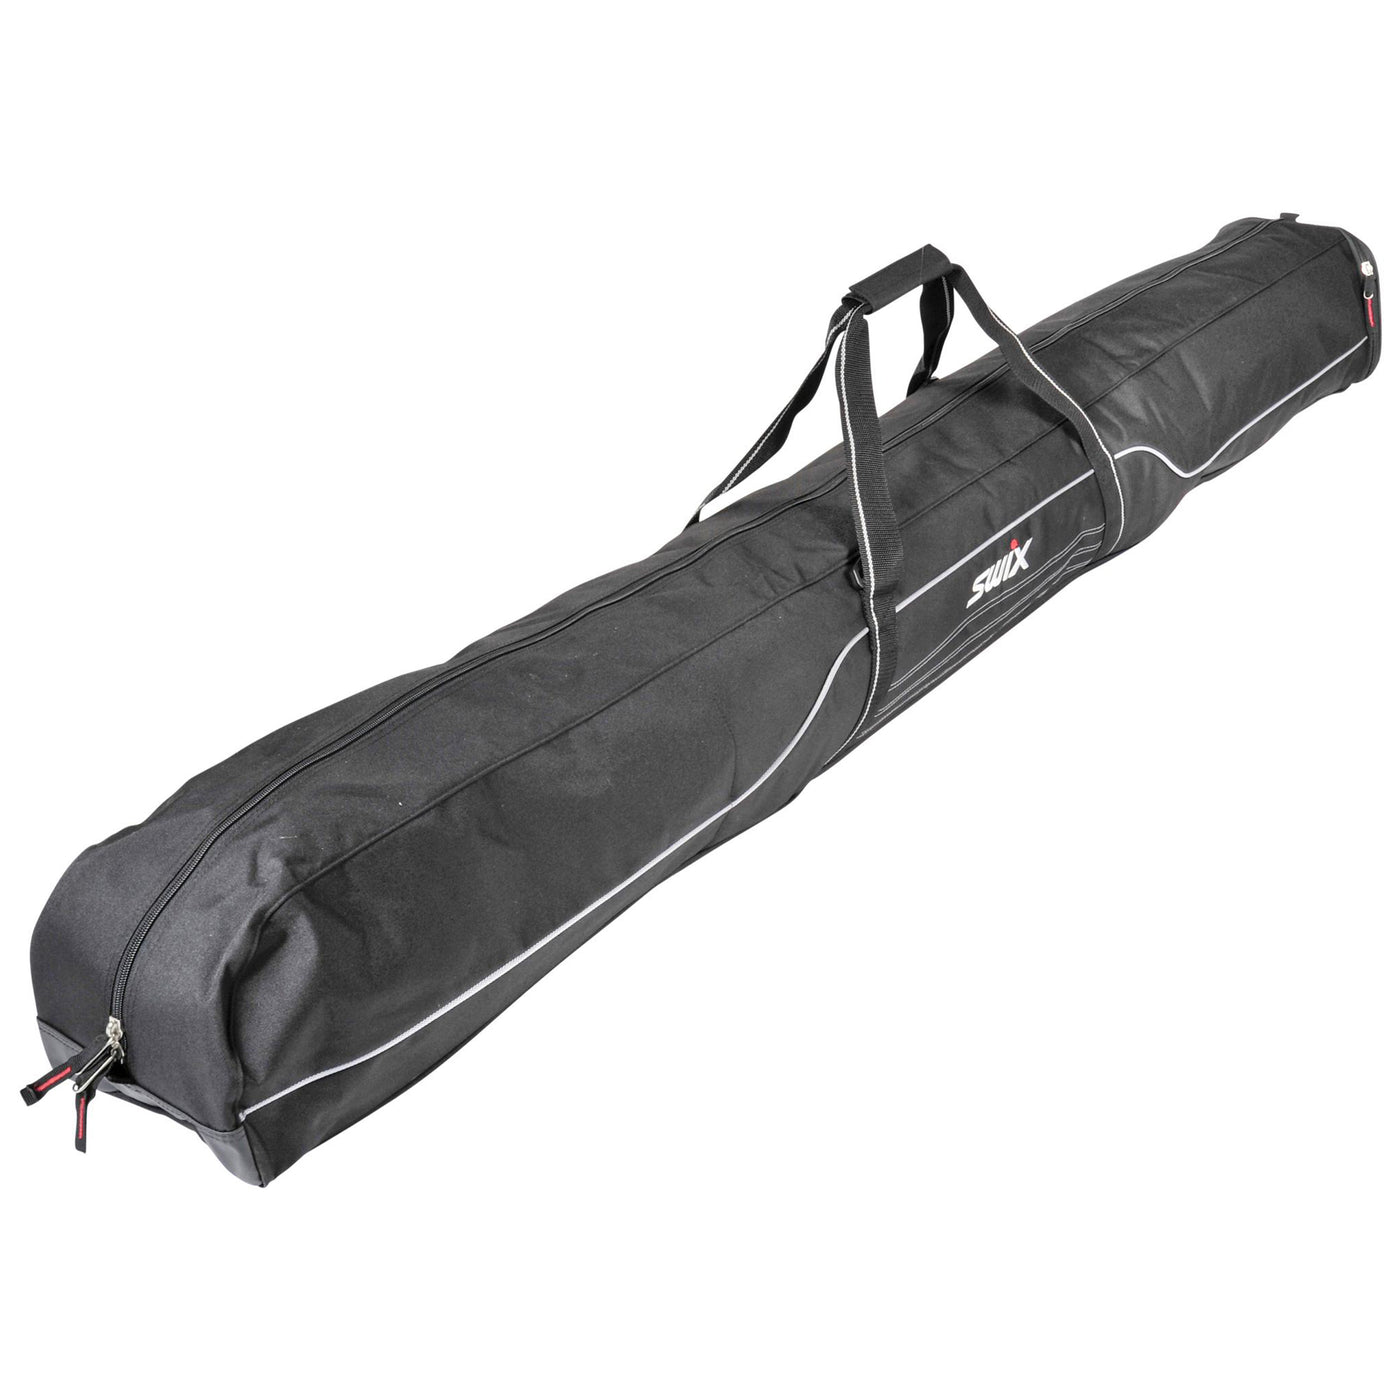 Swix Solid Ski Bag - Single Pair Travel Ski Bag BAGS Swix   